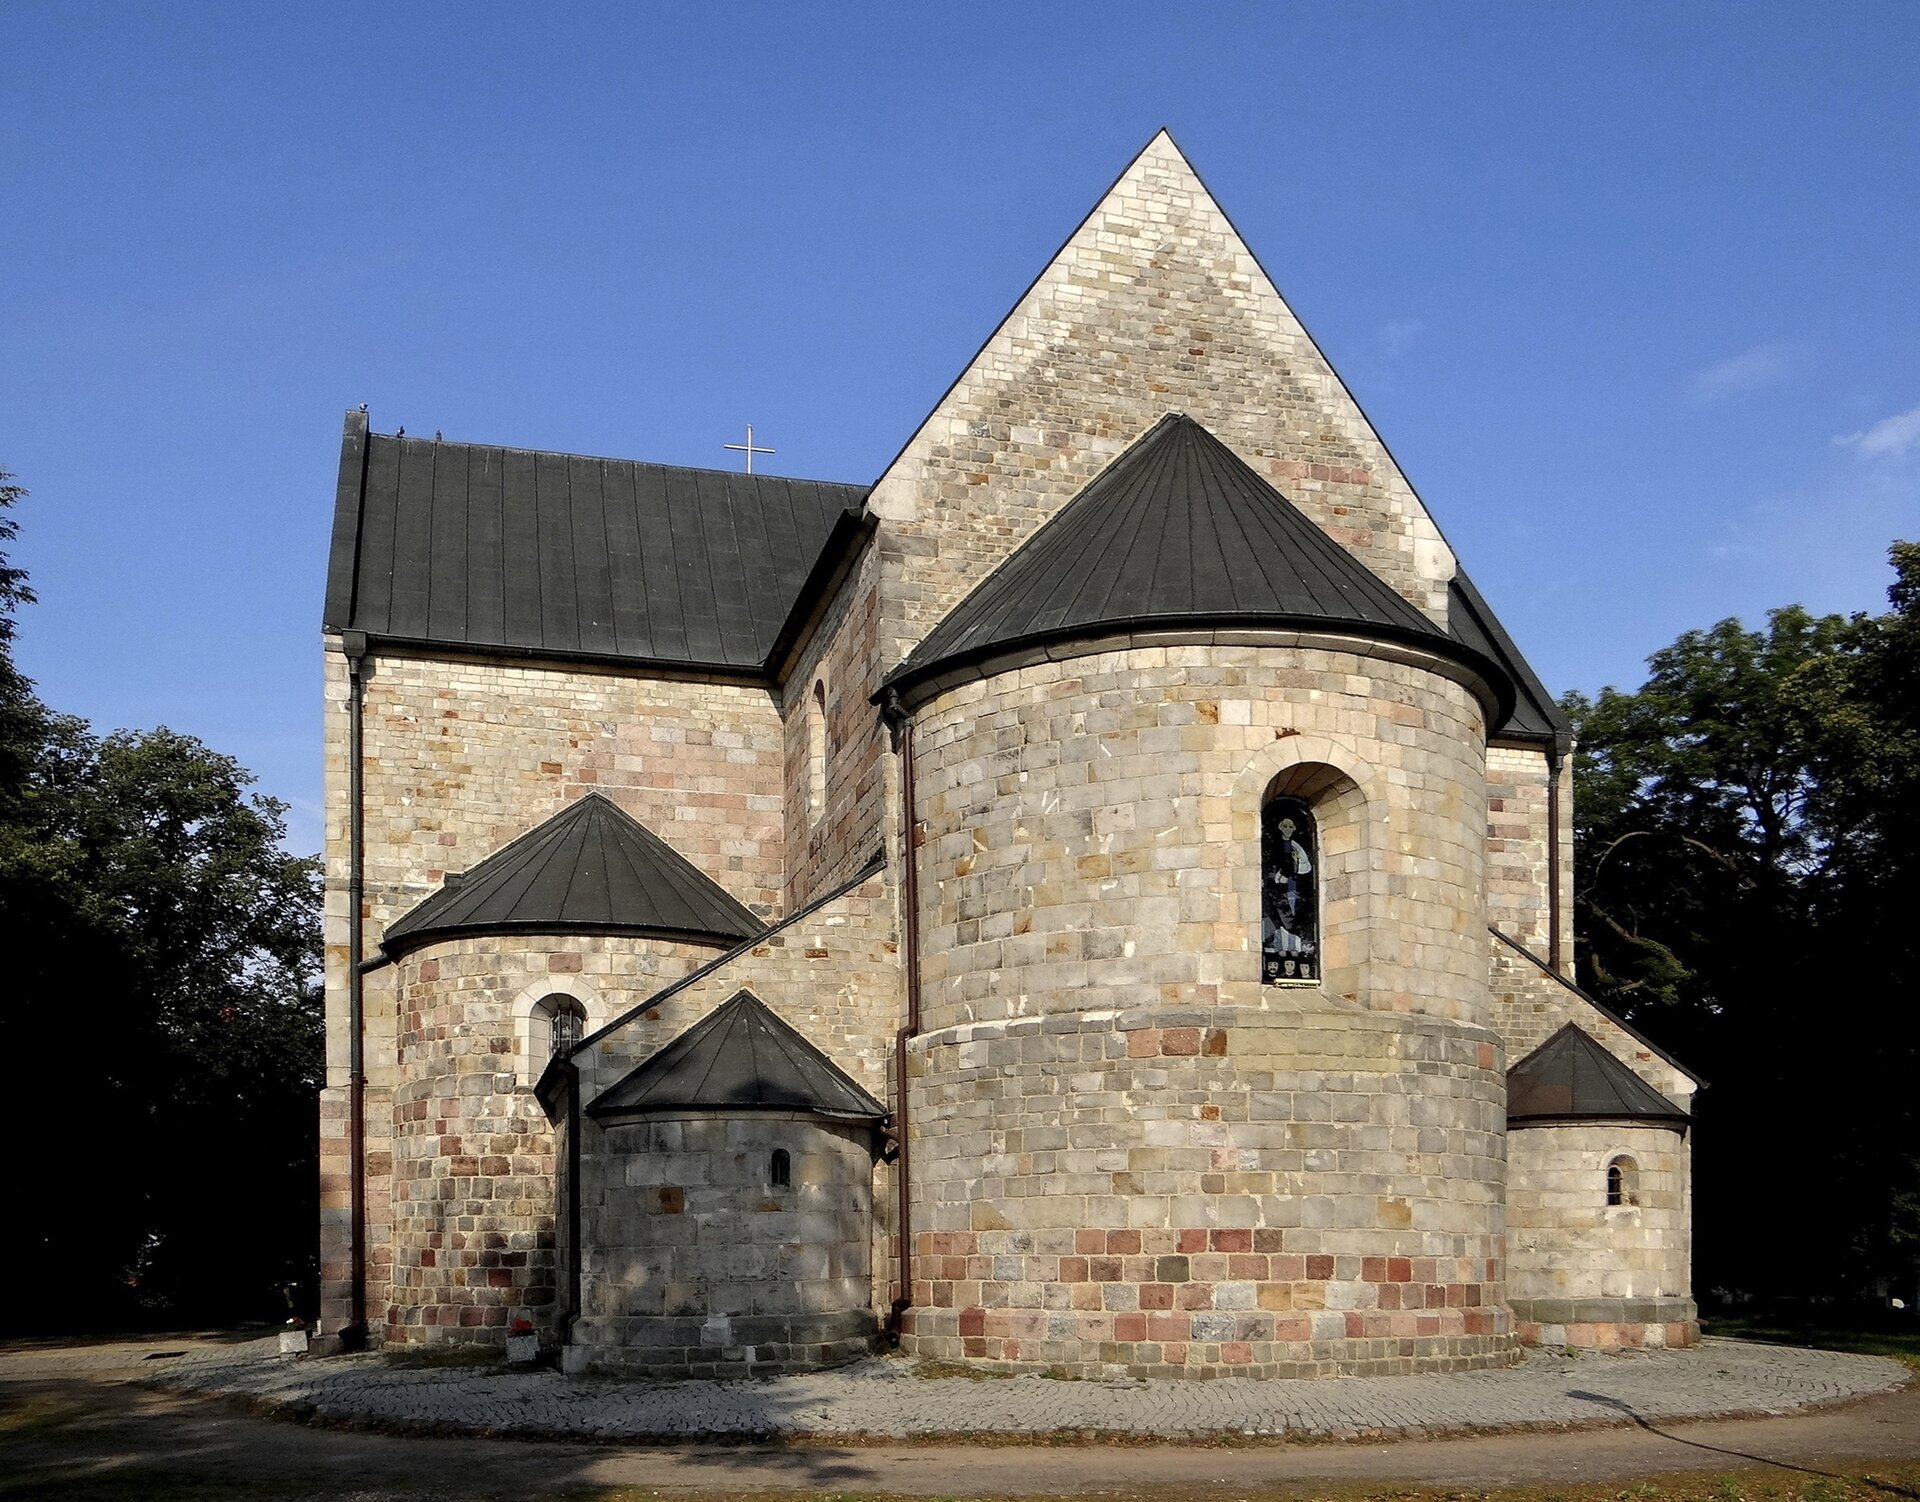 Zdjęcie przedstawia budynek bazyliki. Zbudowana jest z granitu i piaskowca. Ma ceglaną wieżę i półokrągłe apsydy.  